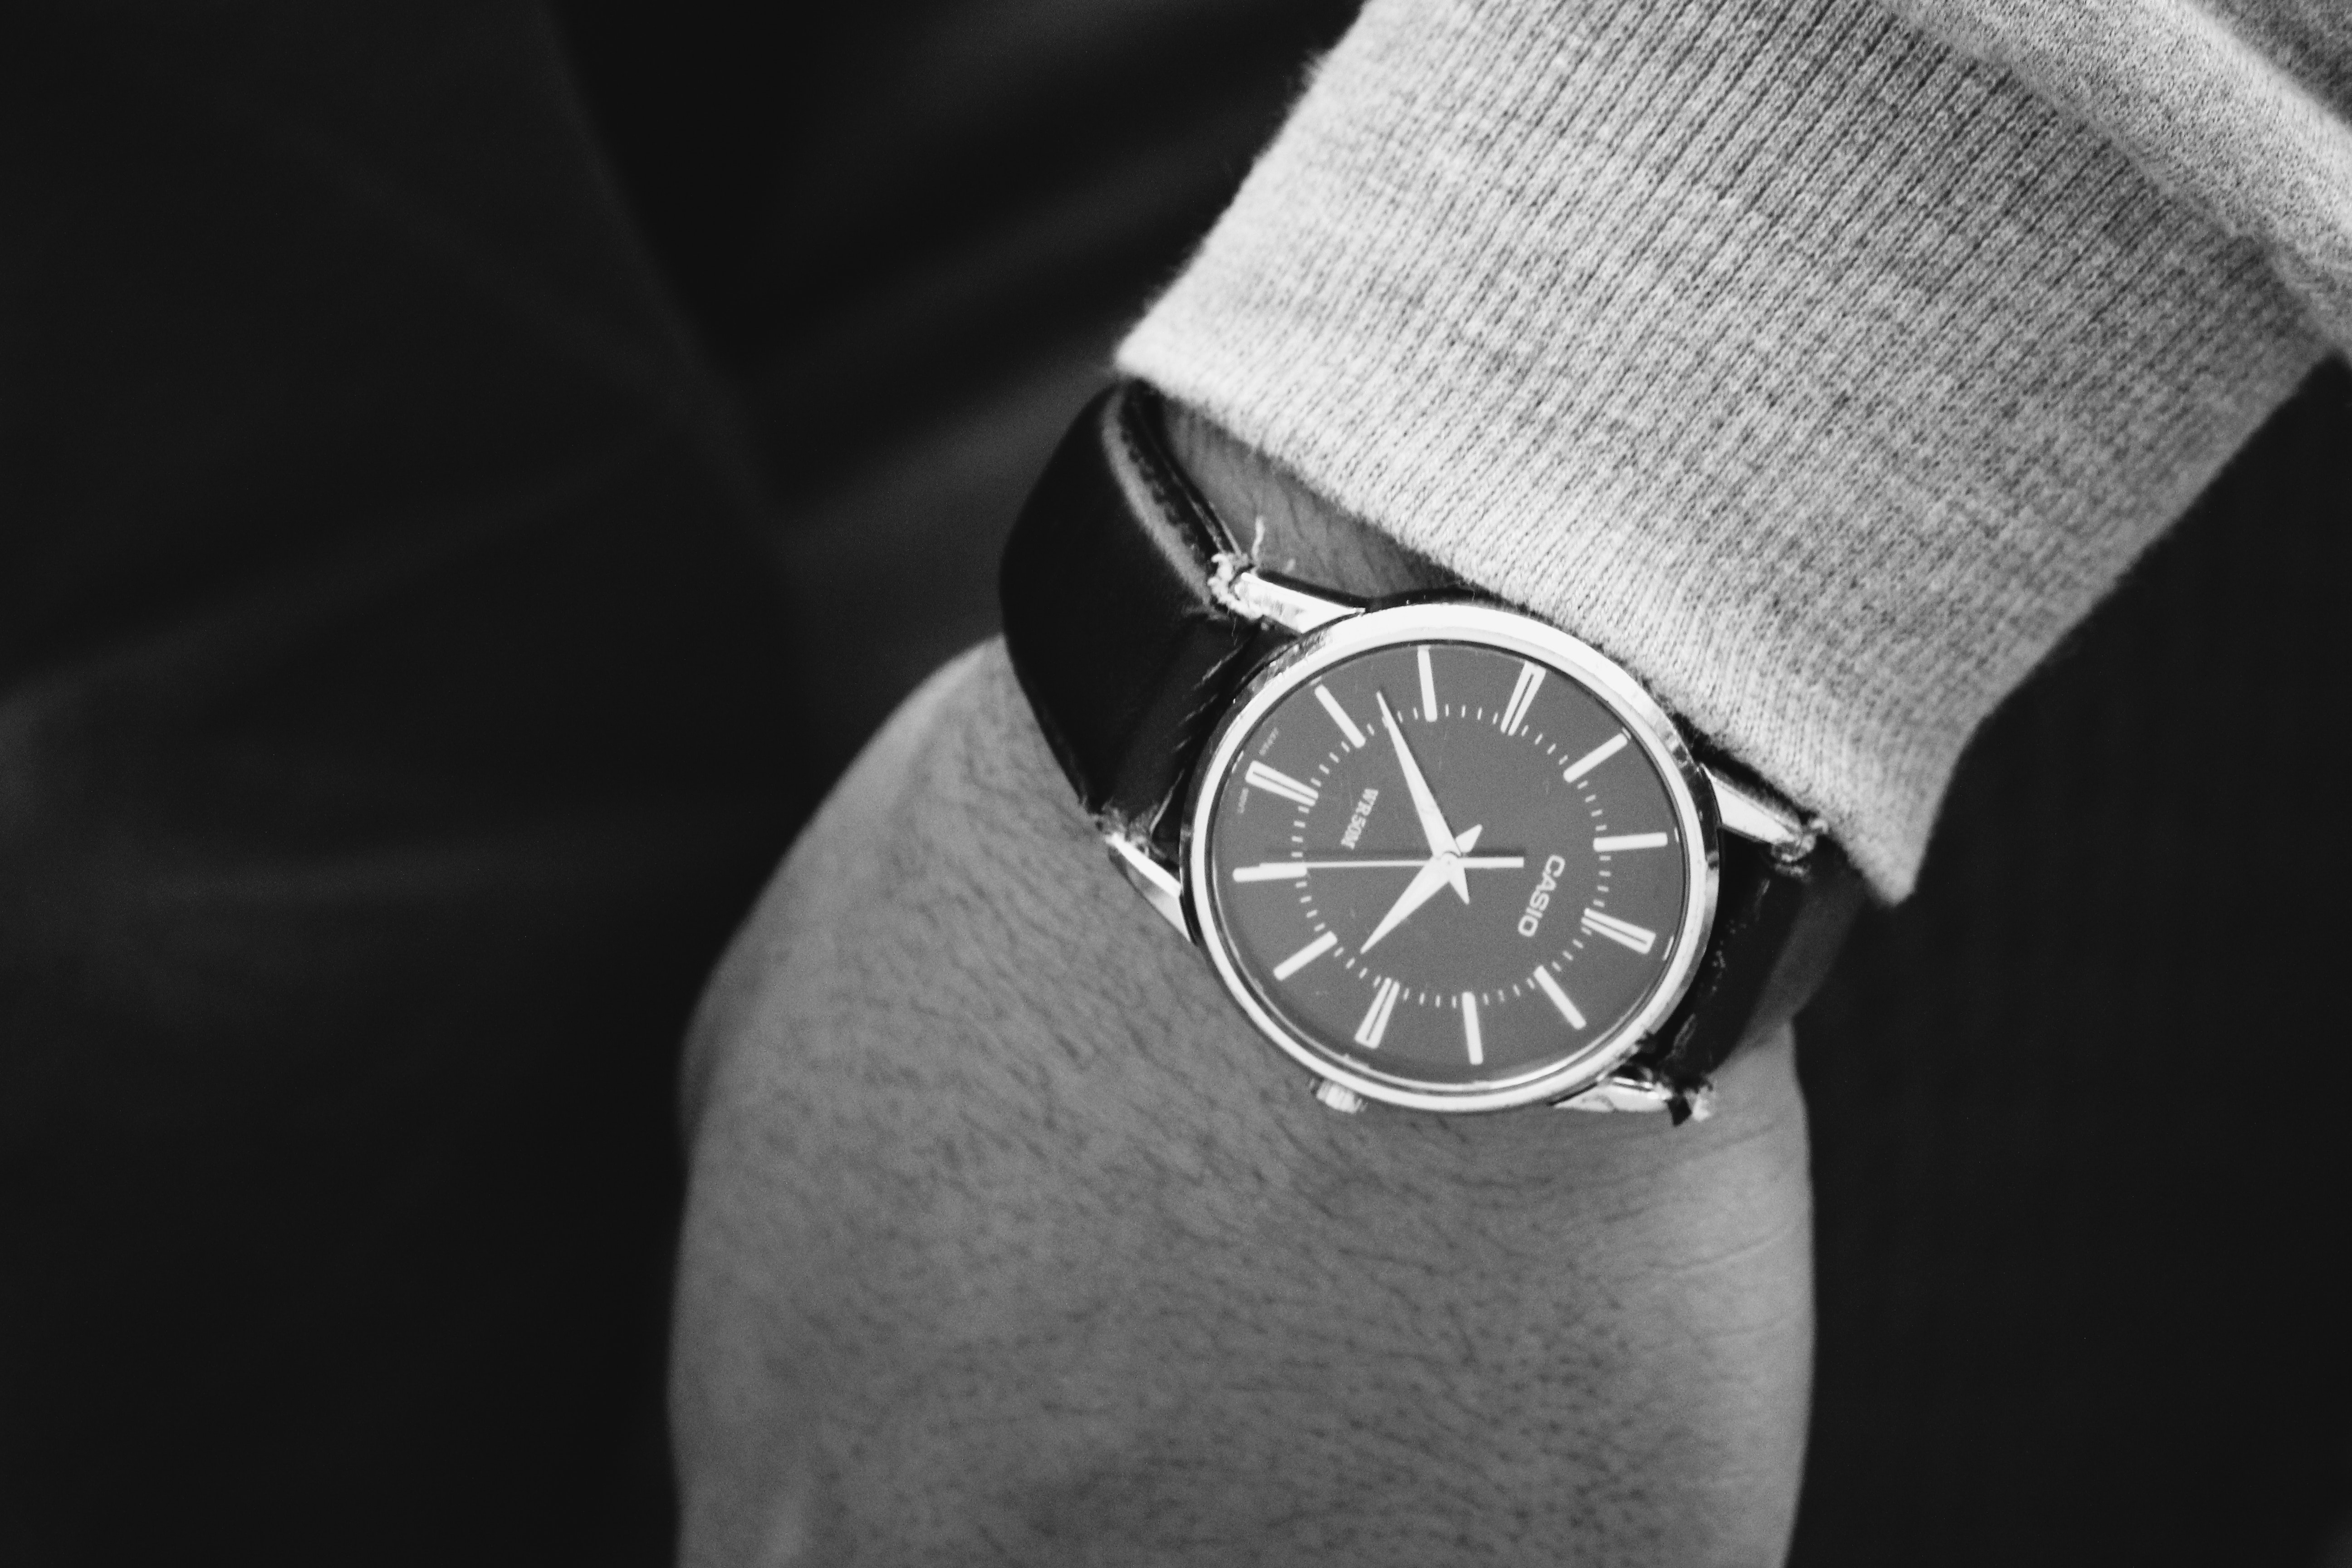 Jam tangan pria modern untuk tampil ke pesta